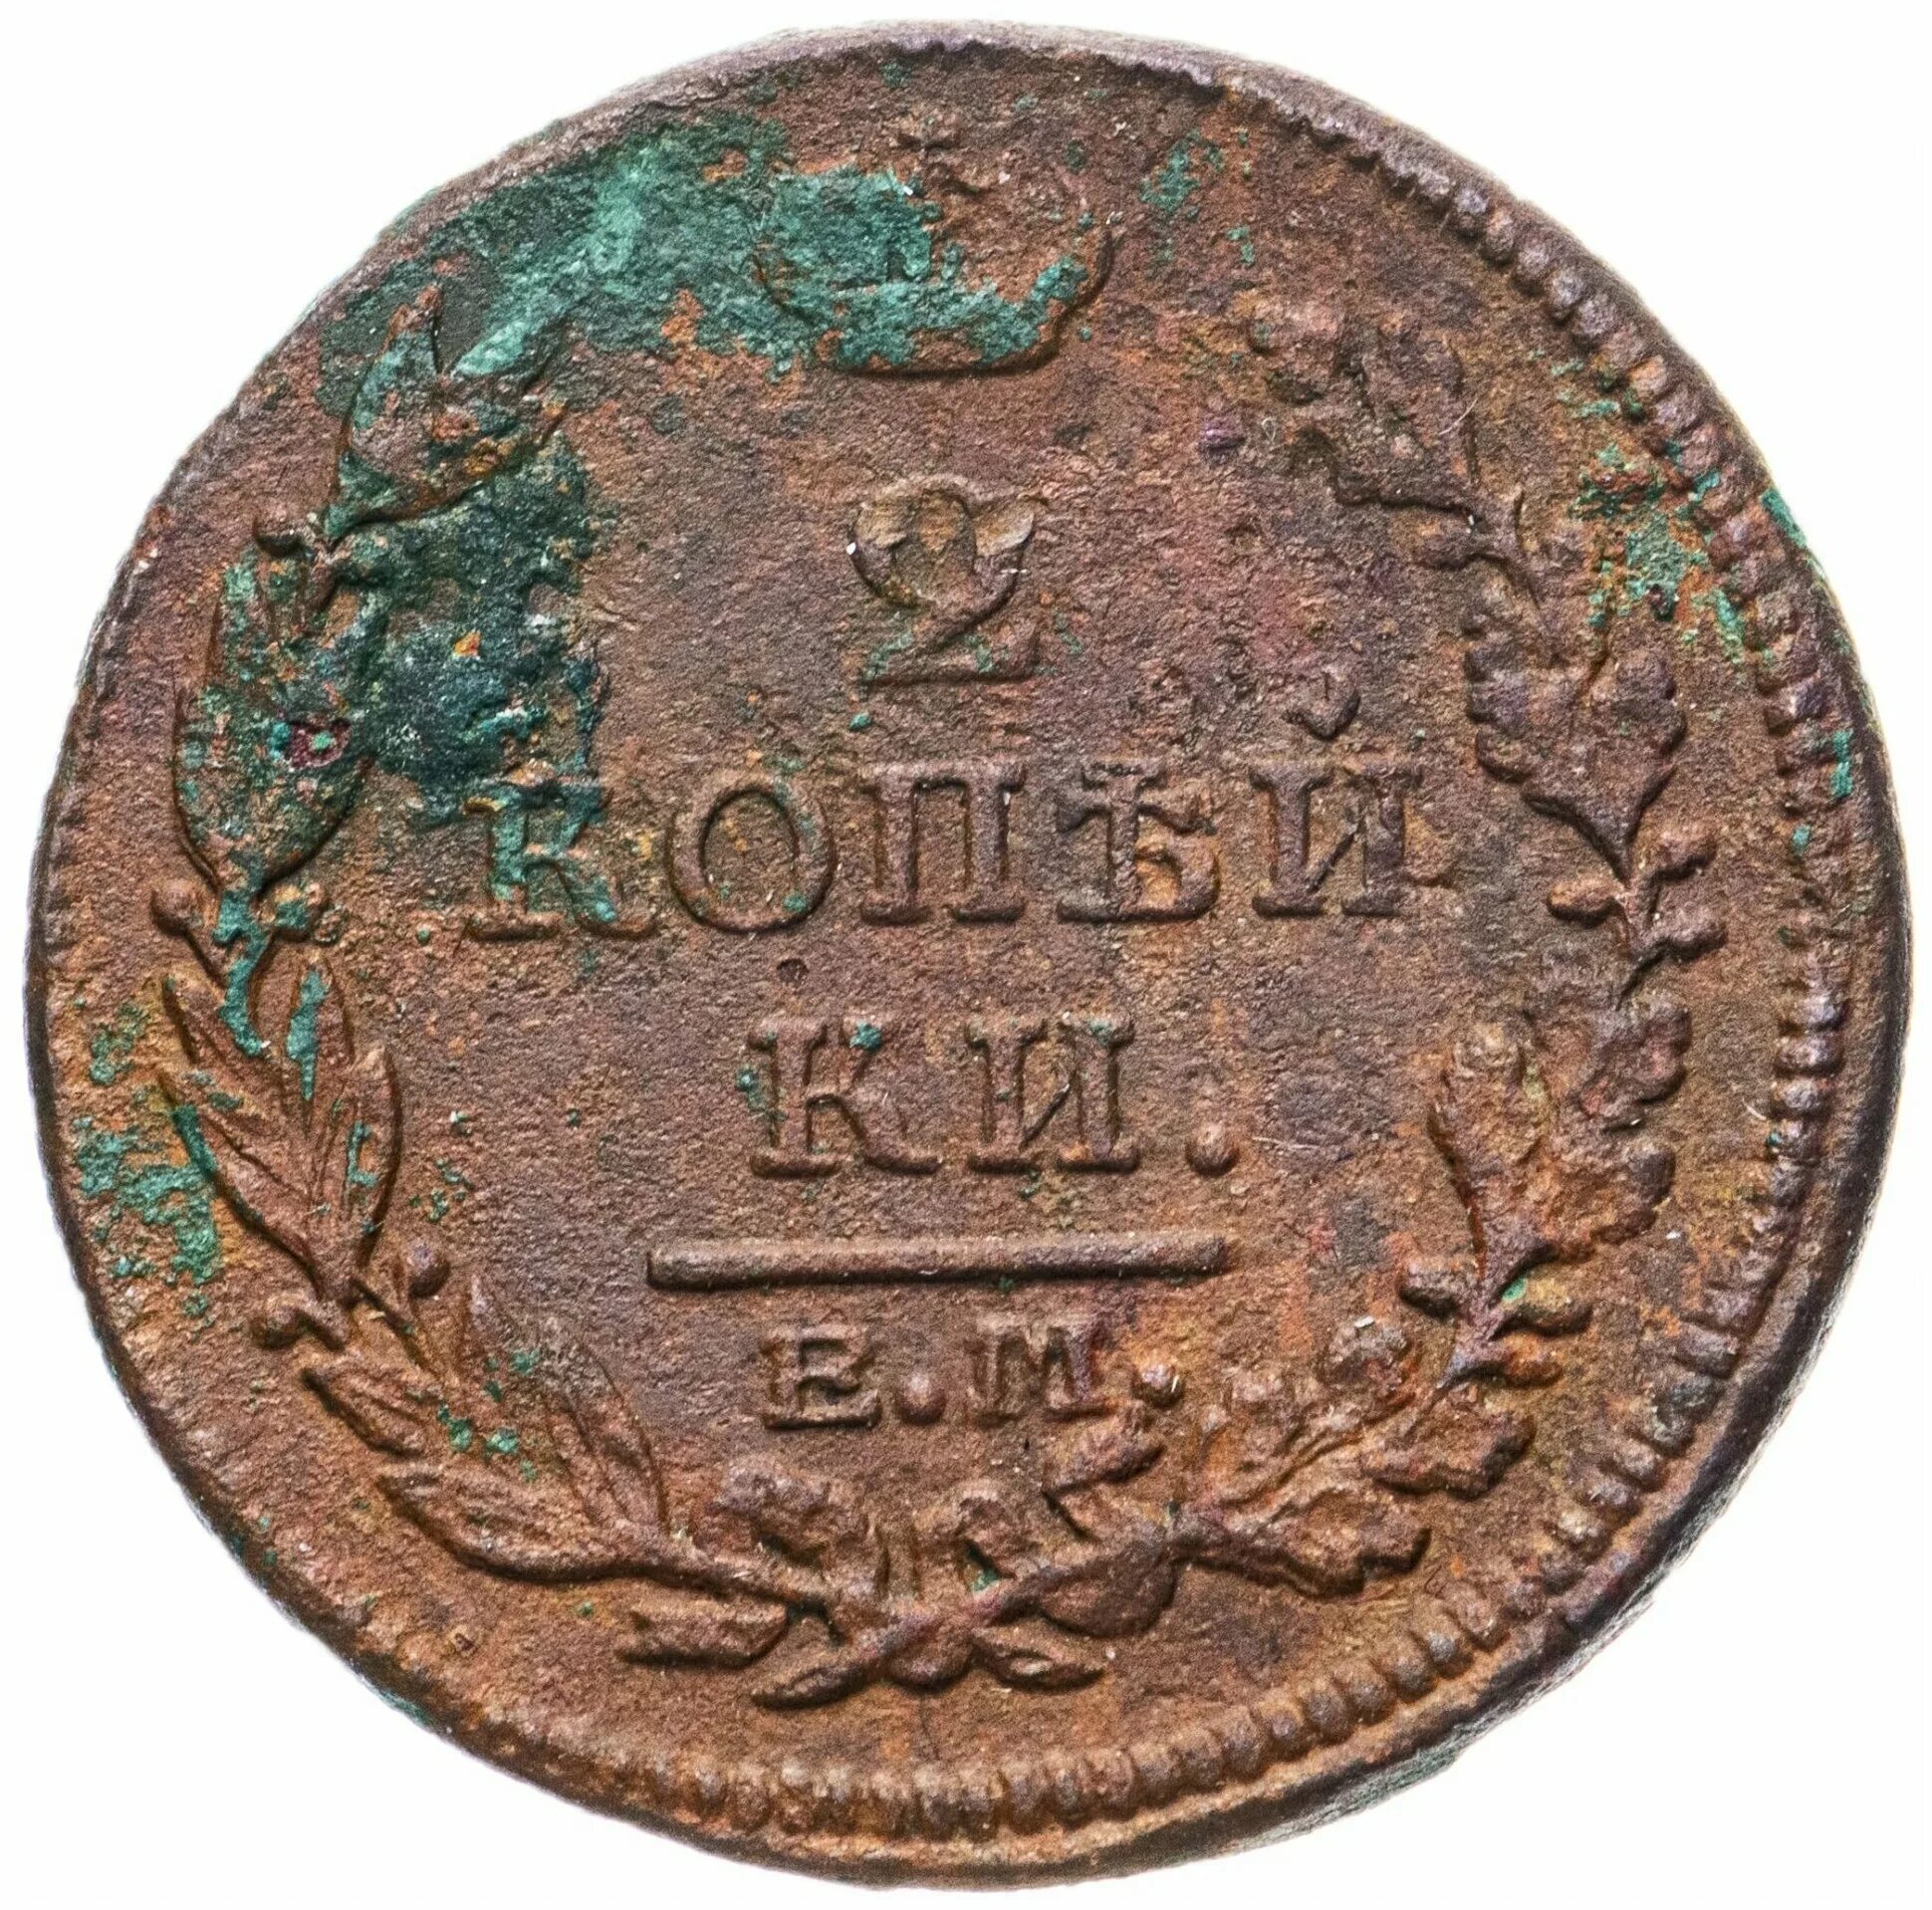 2 копейки царские. 2 Копейки царские 1816. Царская монета 2 копейки 1816 года. Монета 2 копейки 1816 ем НМ. 2 Копейки царские медные.